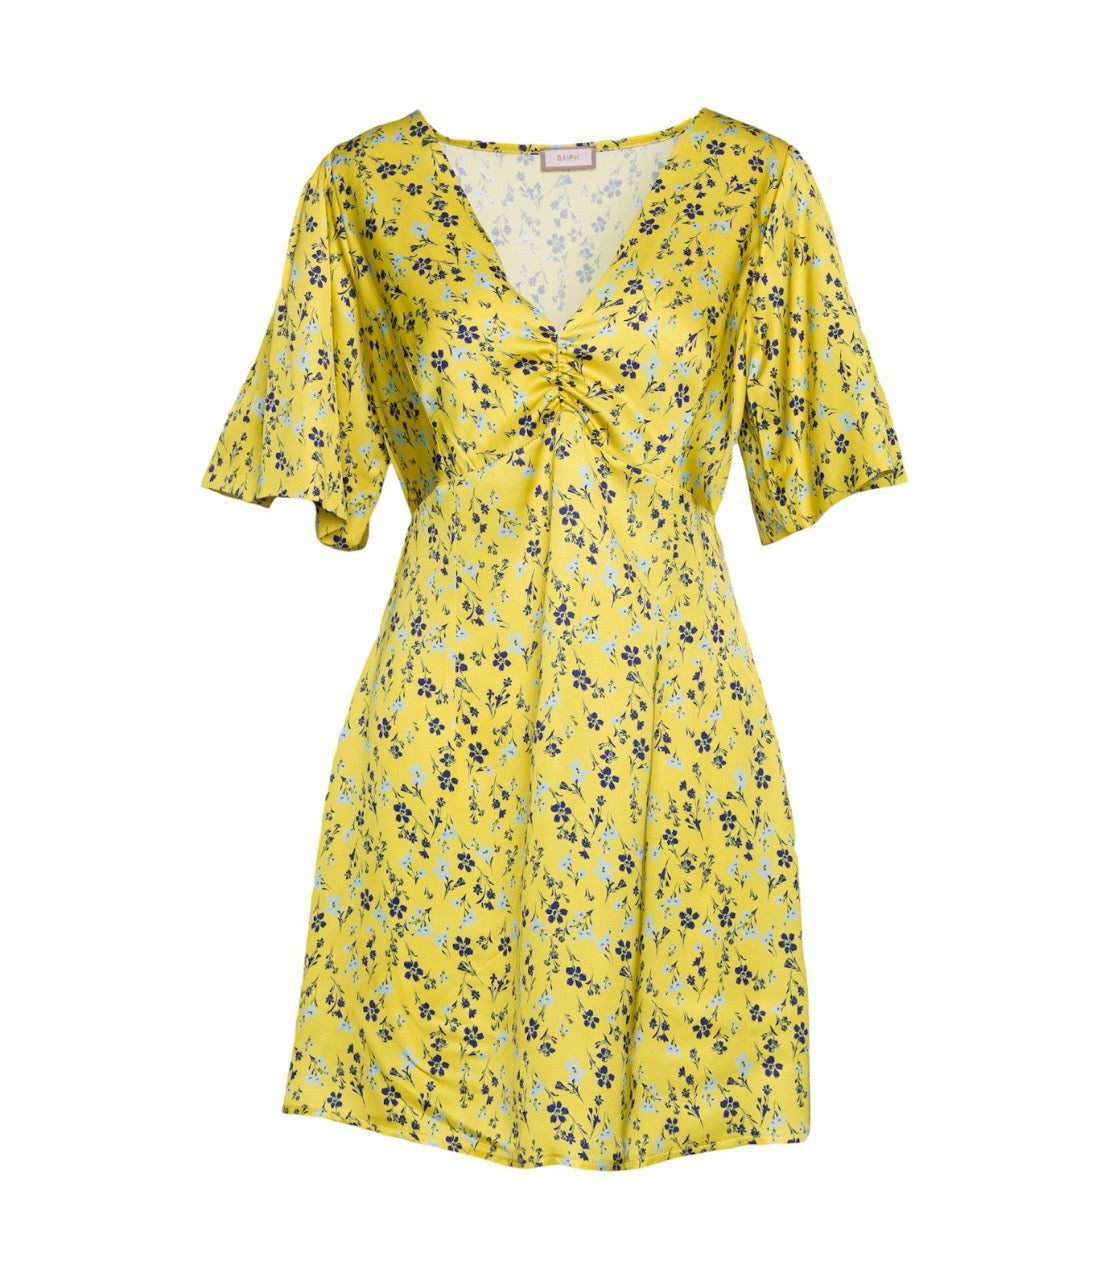 Saiph floral yellow print dress